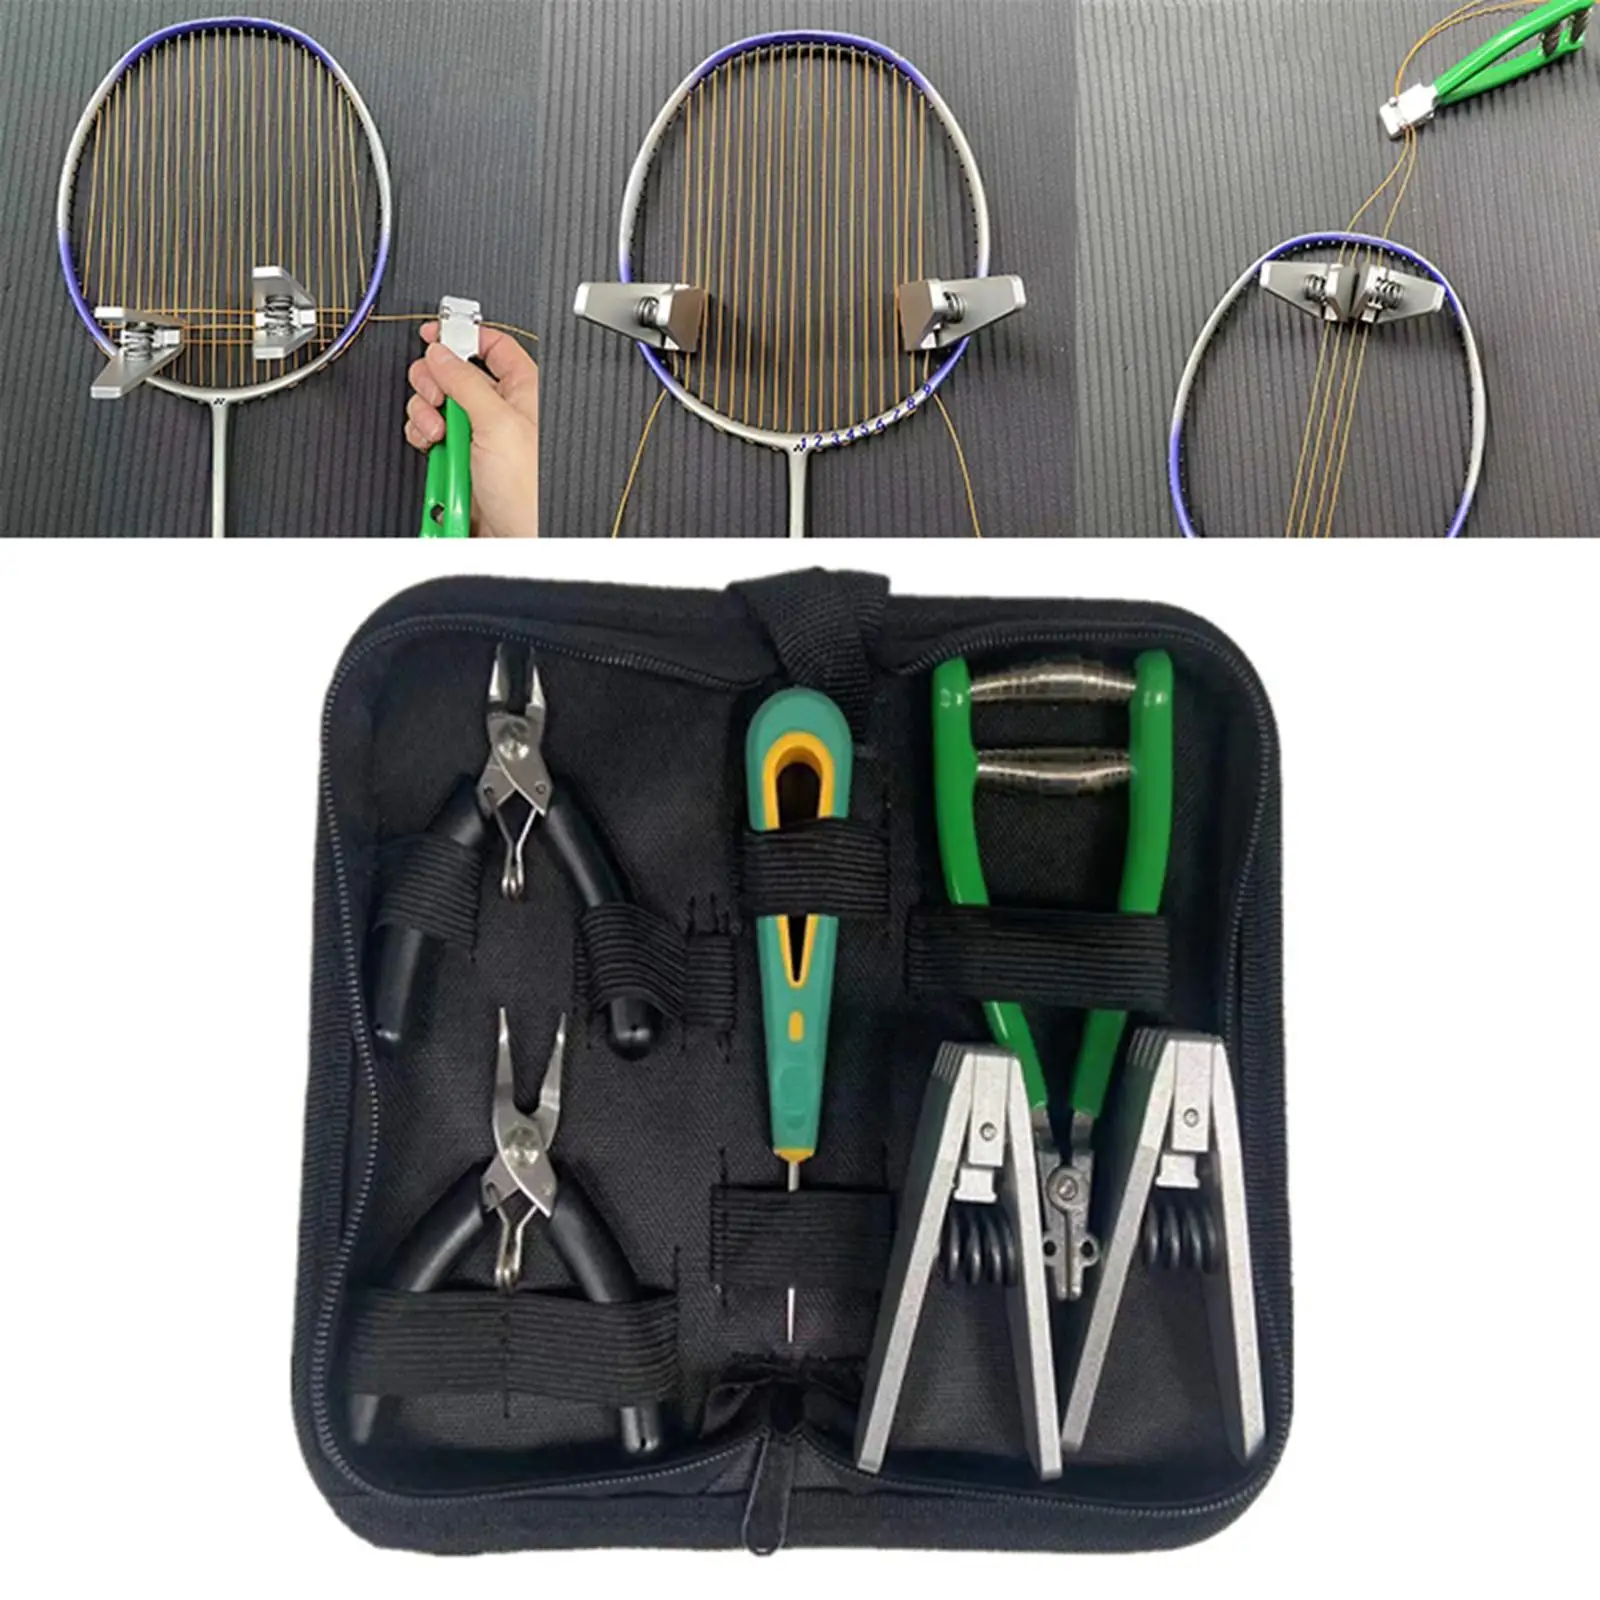 Portable Starting Stringing Clamp Tool Kit Badminton Tennis Racket Restring